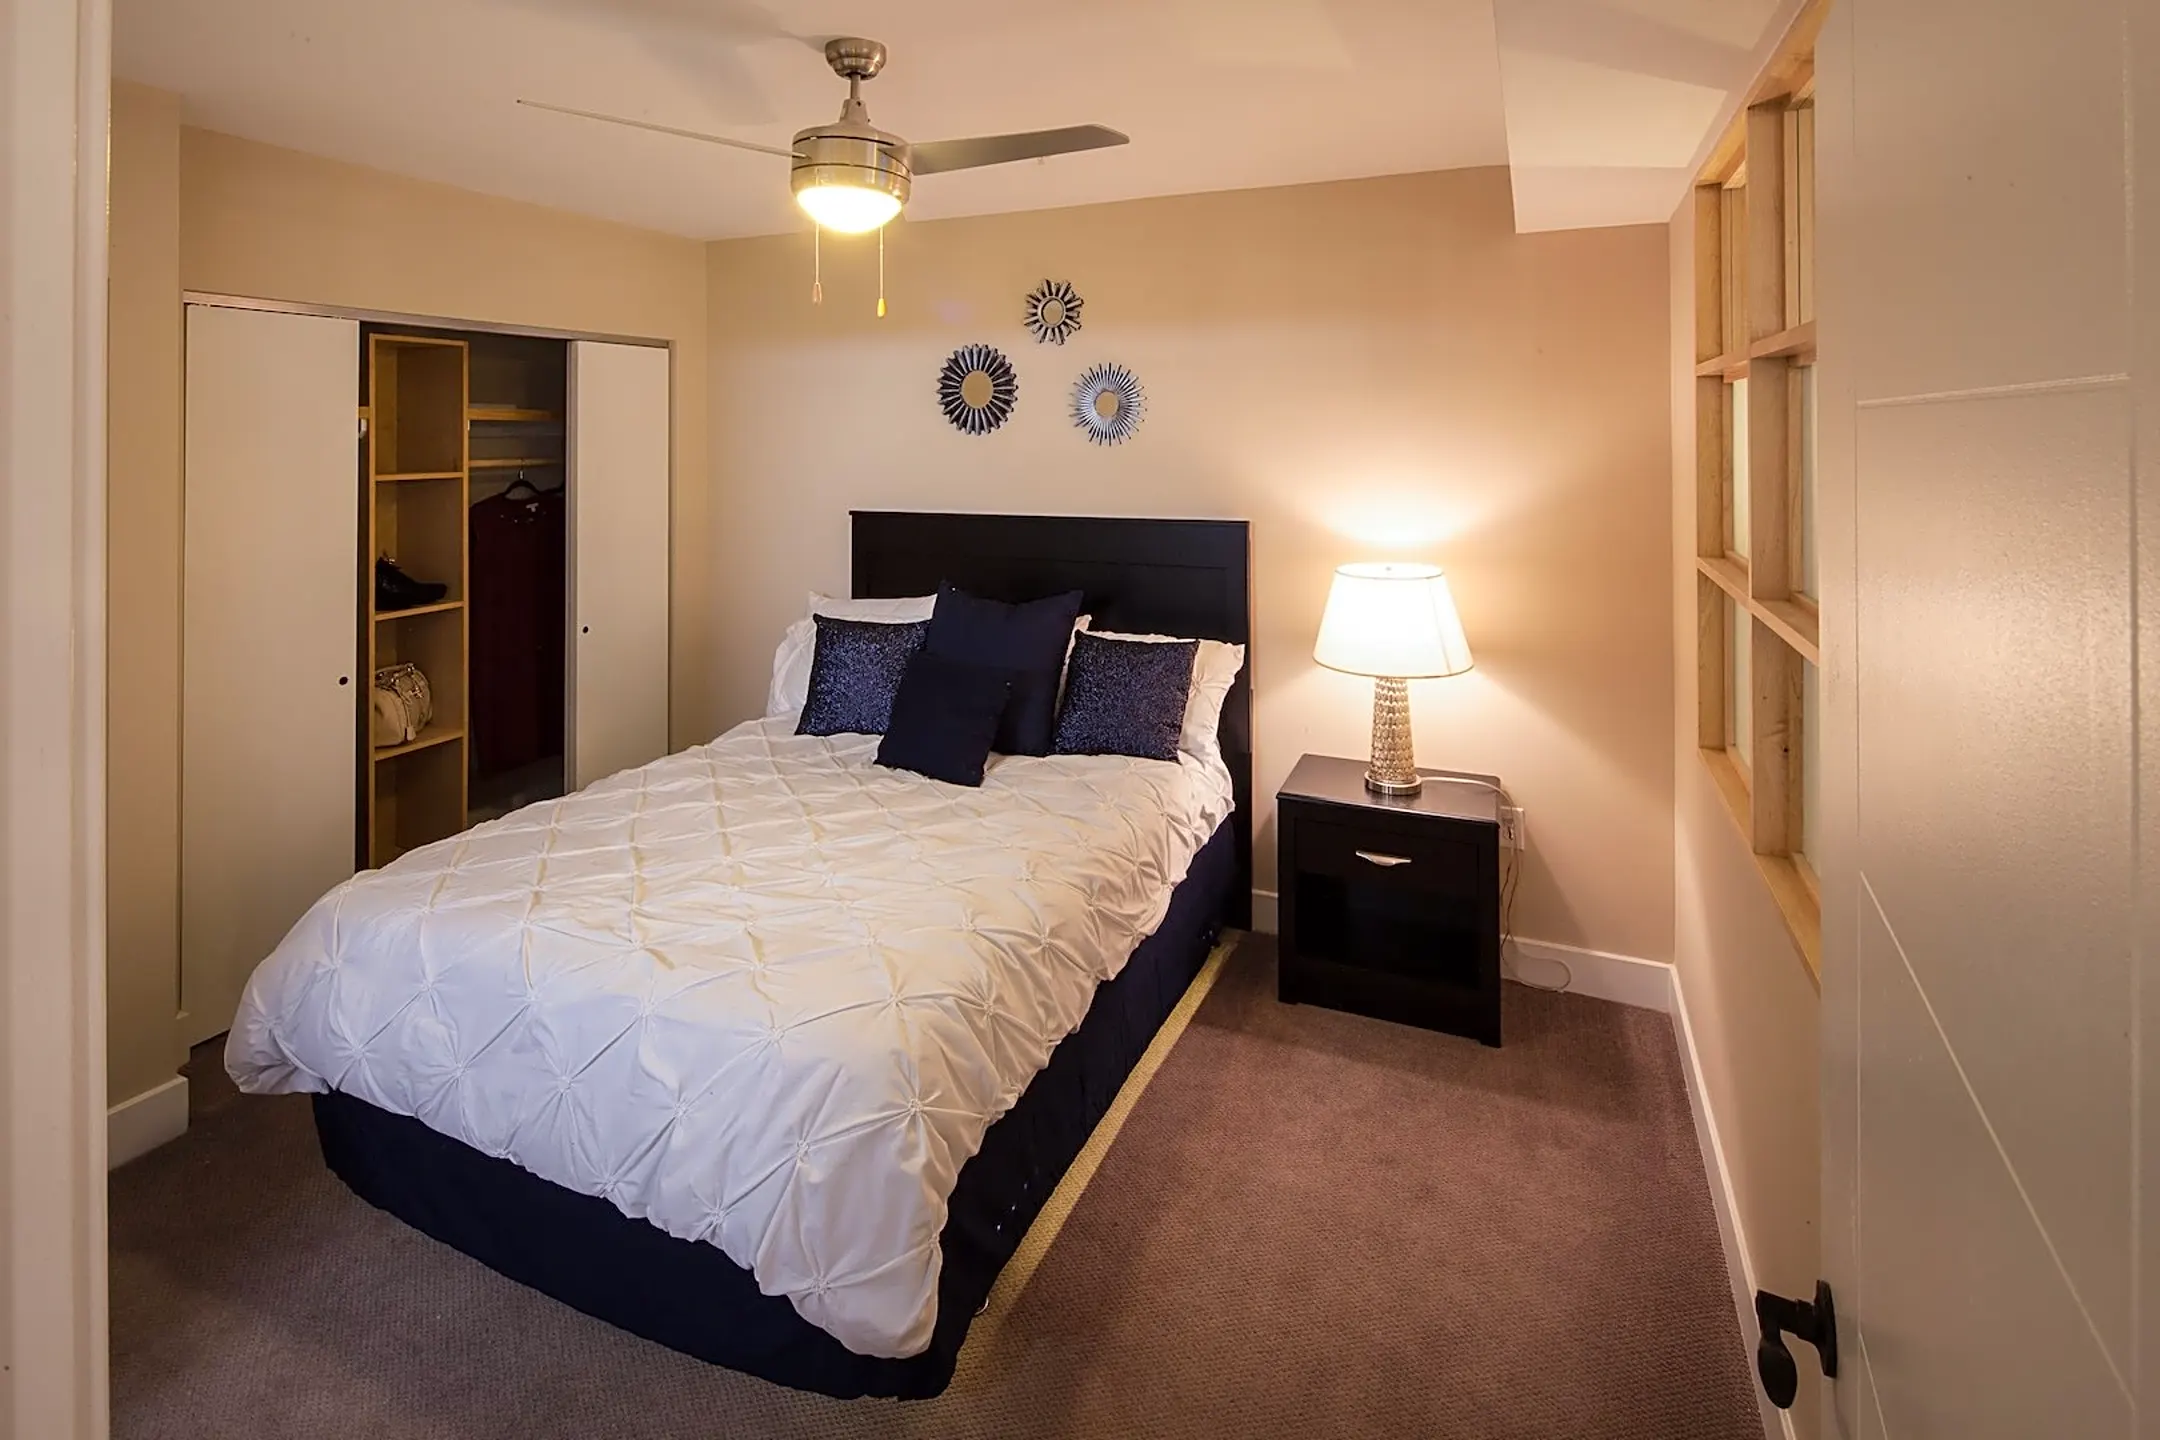 Bedroom - Overview - Richmond, VA